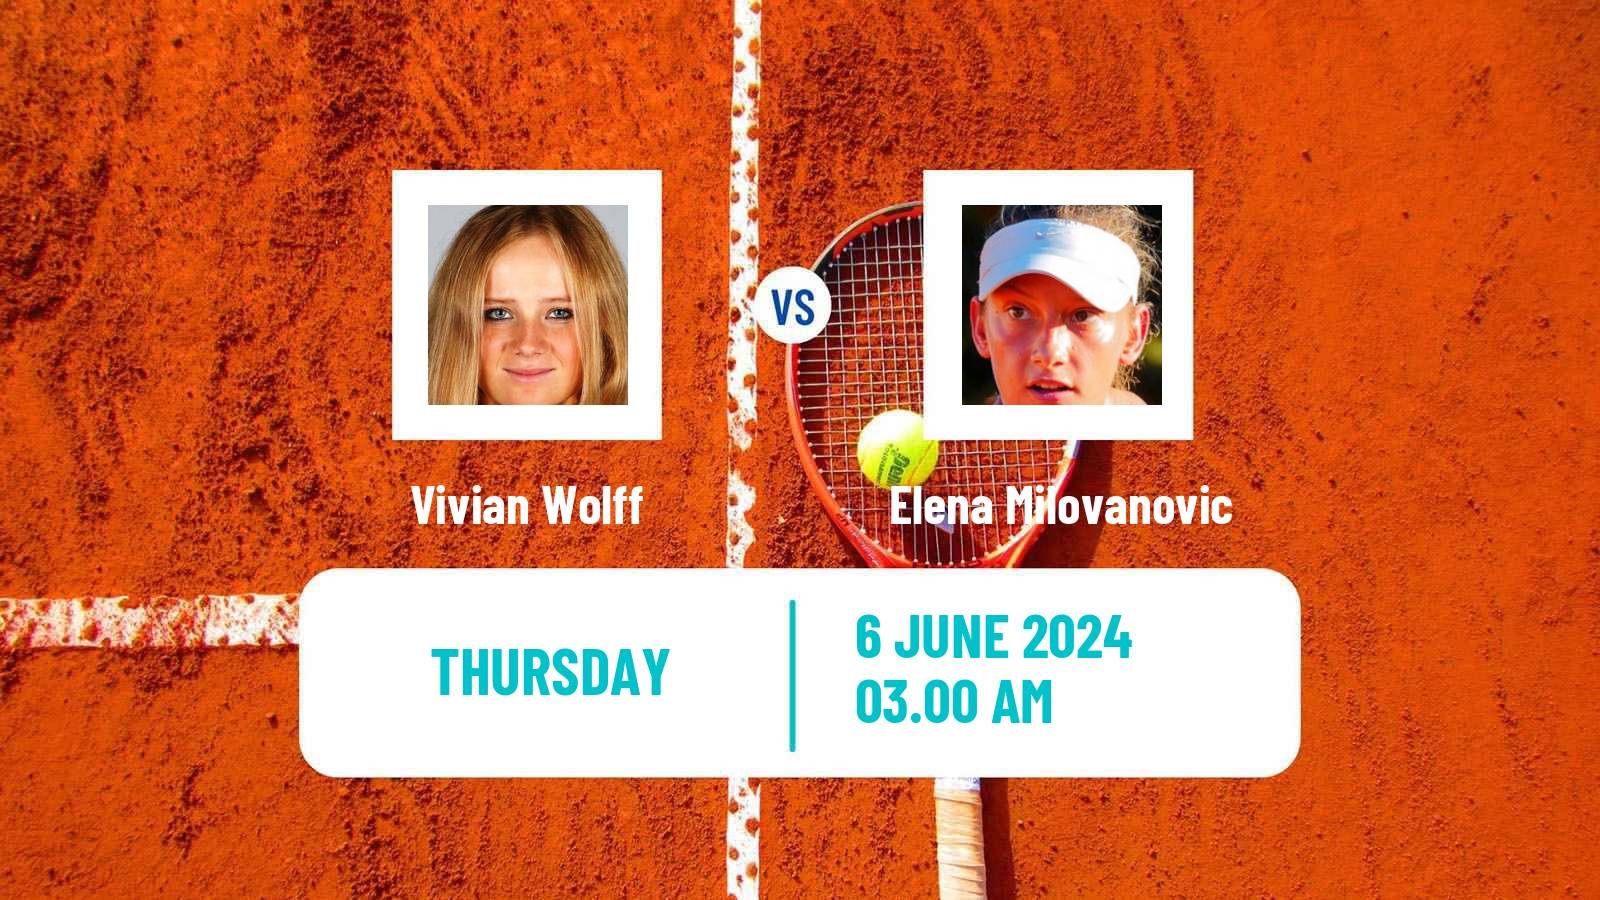 Tennis ITF W35 Kursumlijska Banja 2 Women Vivian Wolff - Elena Milovanovic